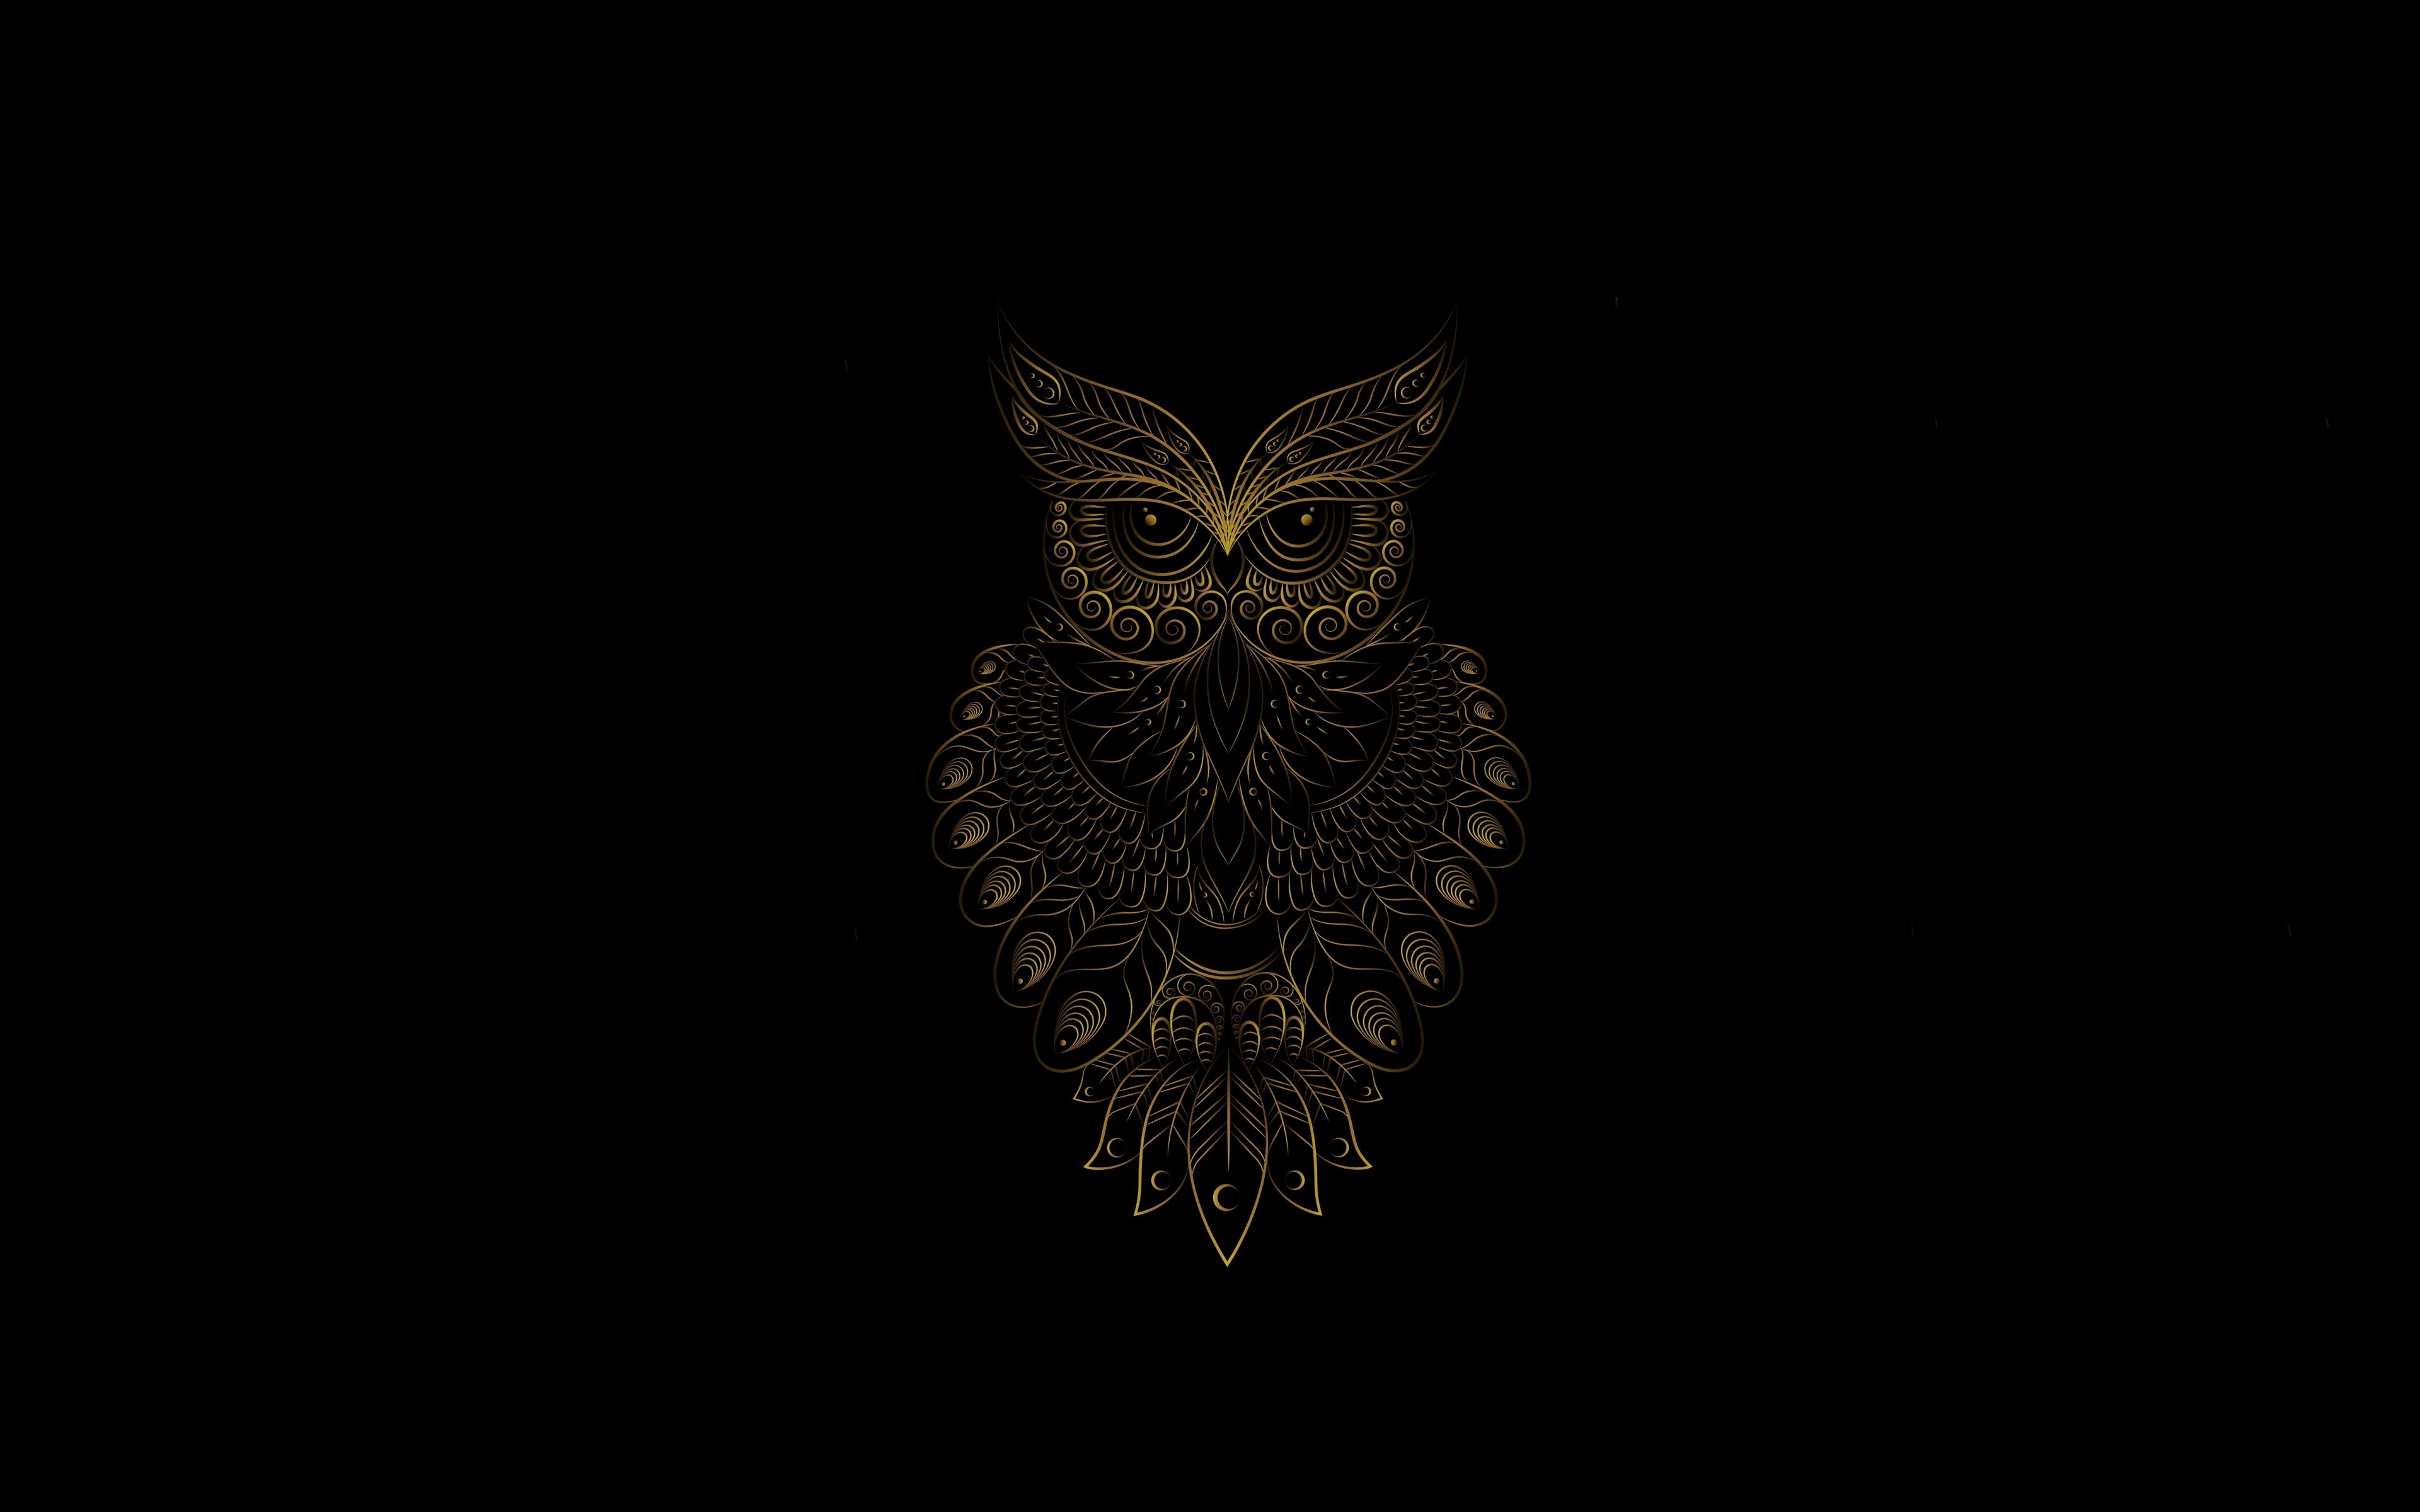 Download 3840x2400 wallpaper golden owl bird, pattern, art, 4k, ultra HD 16: widescreen, 3840x2400 HD image, background, 24659